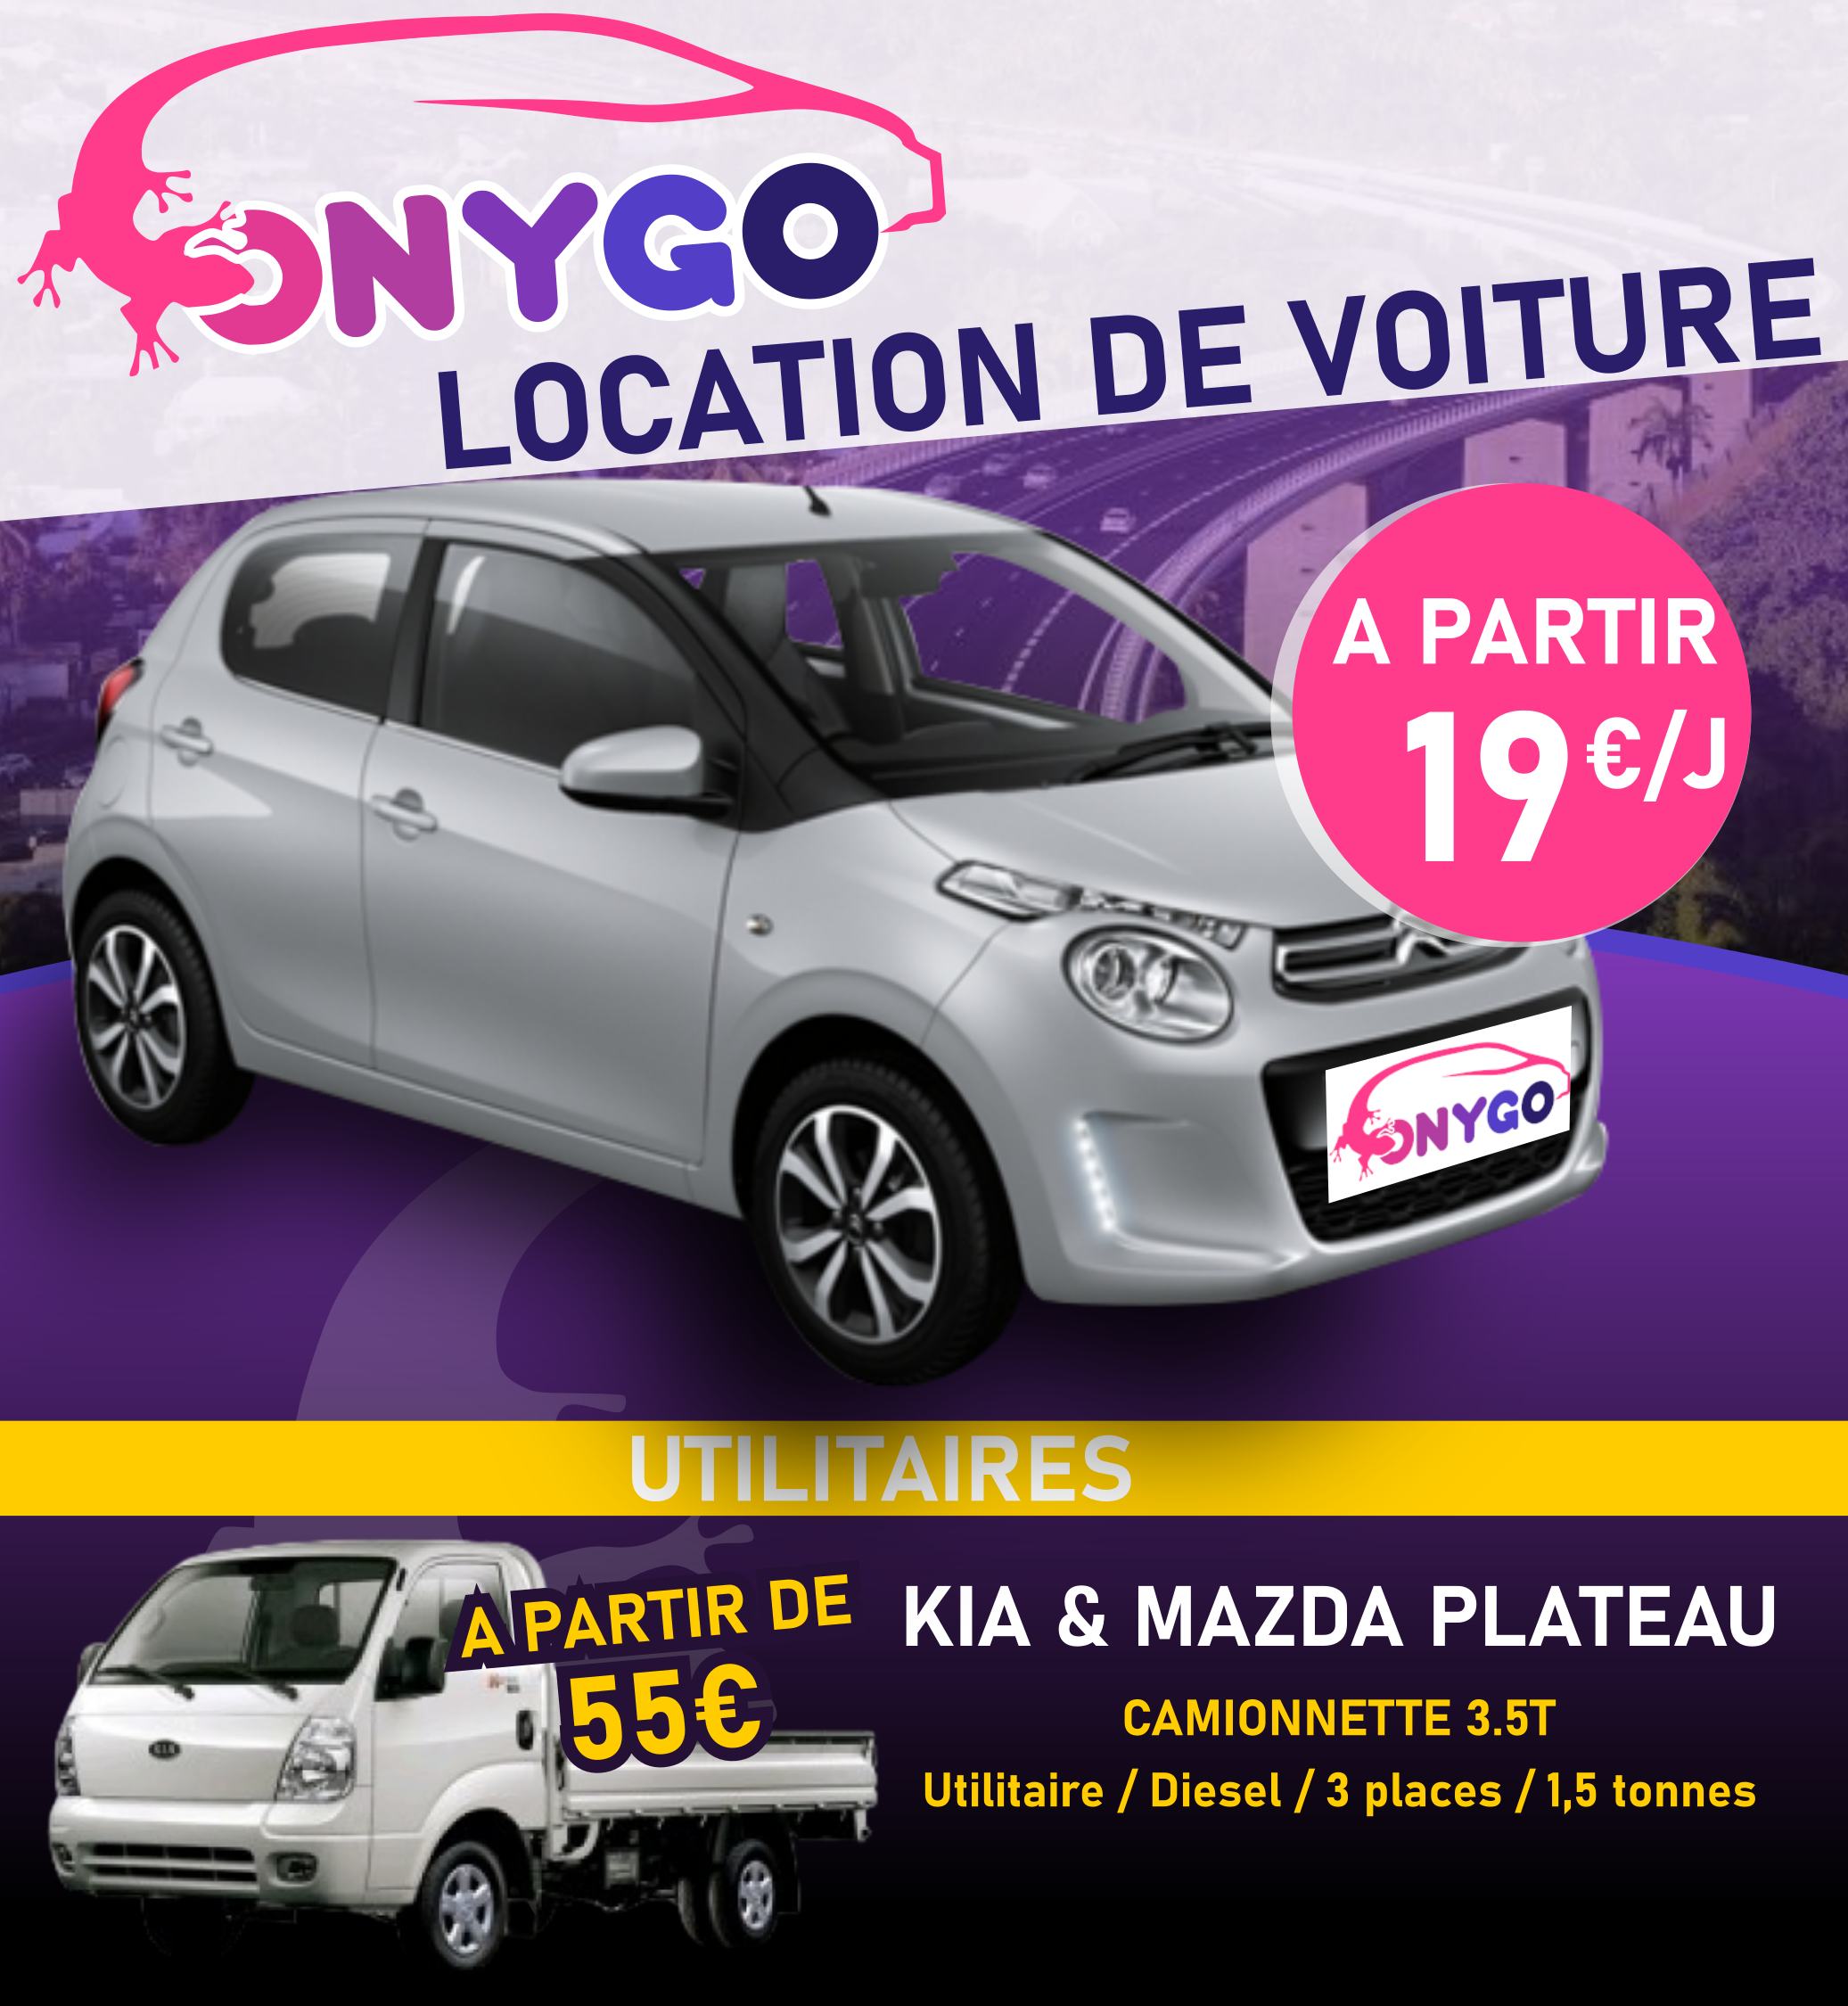 ONYGO vous propose la location de voiture de tourisme et véhicules utilitaires sur l'Ile de la Réunion